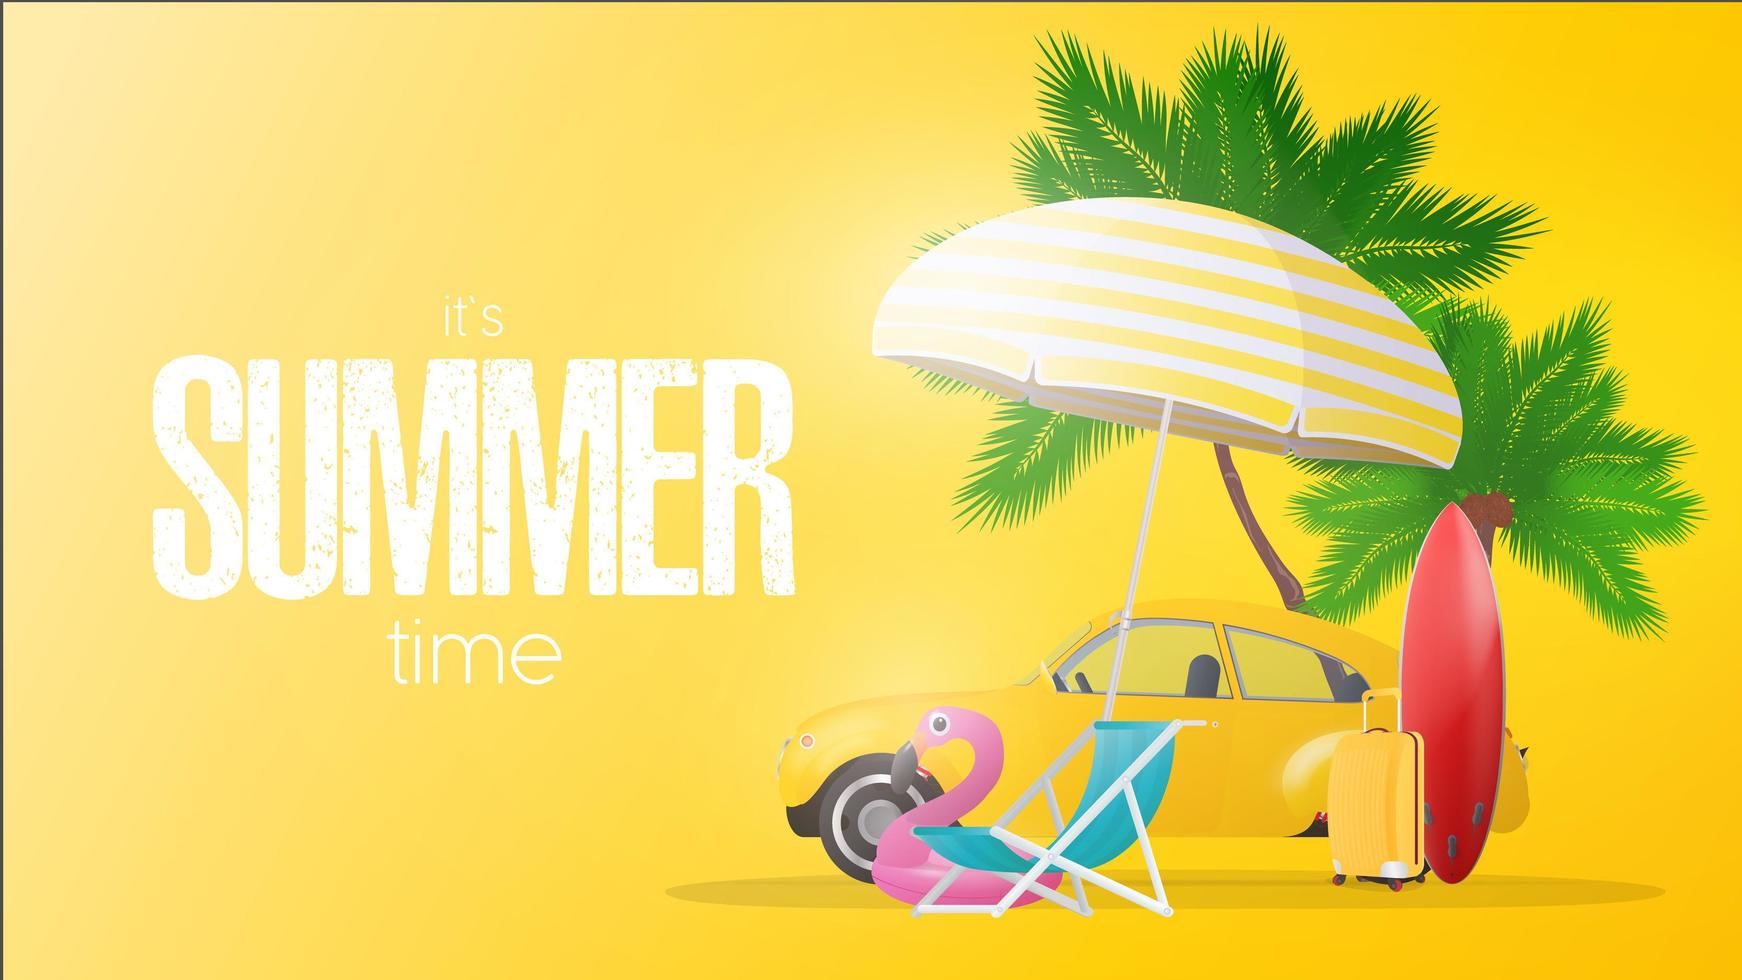 affiche jaune de l'heure d'été. parasol, chaise longue de plage, cercle de flamant rose, valise de voyage jaune, planche de surf rouge, palmiers et voiture jaune. vecteur